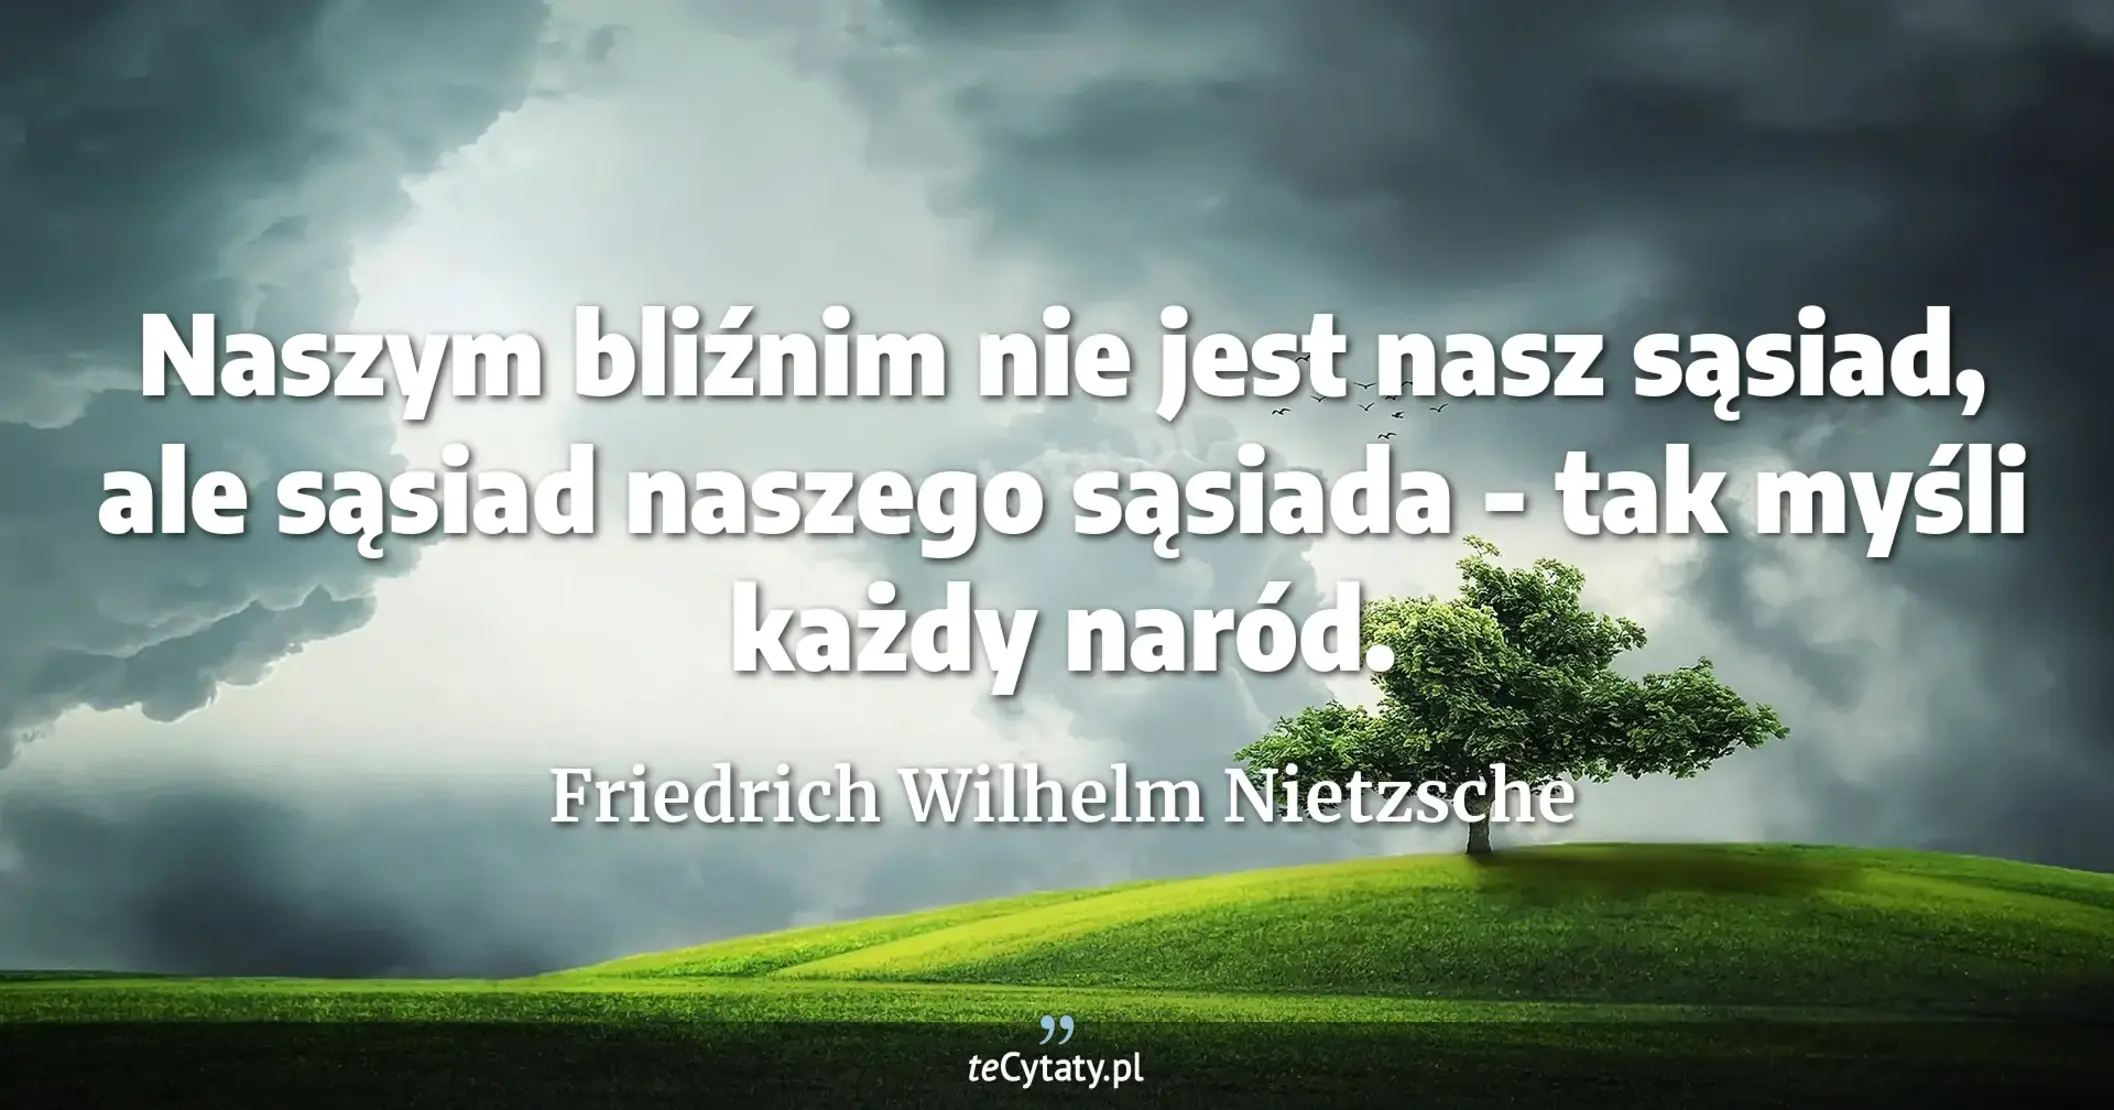 Naszym bliźnim nie jest nasz sąsiad, ale sąsiad naszego sąsiada - tak myśli każdy naród. - Friedrich Wilhelm Nietzsche